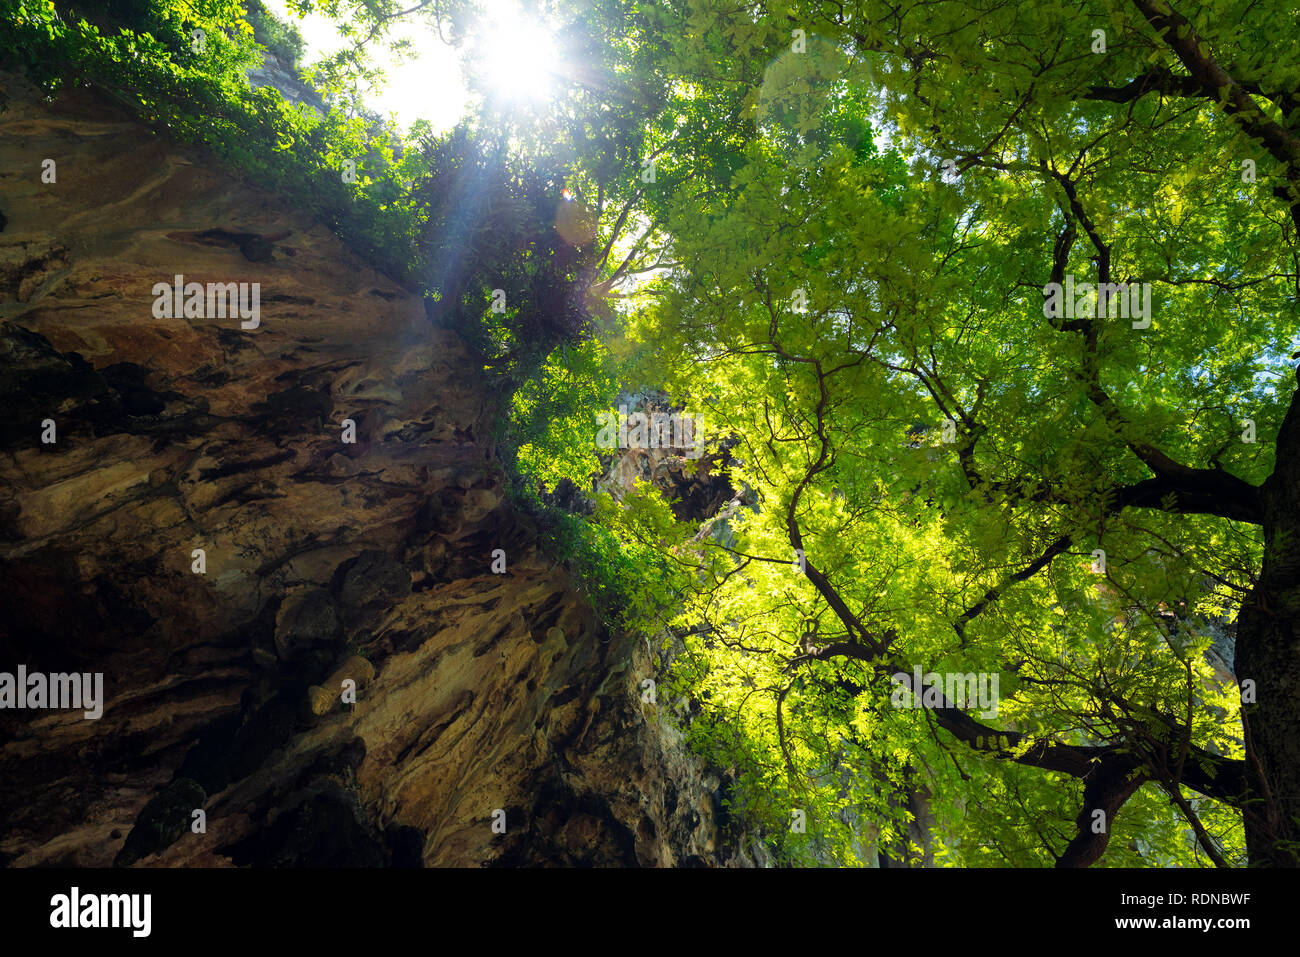 Giungle sulla penisola di Railay, provincia di Krabi, Thailandia. Il fogliame di un grande albero incontra una roccia calcarea e formare immensa ombra fresca. Foto Stock